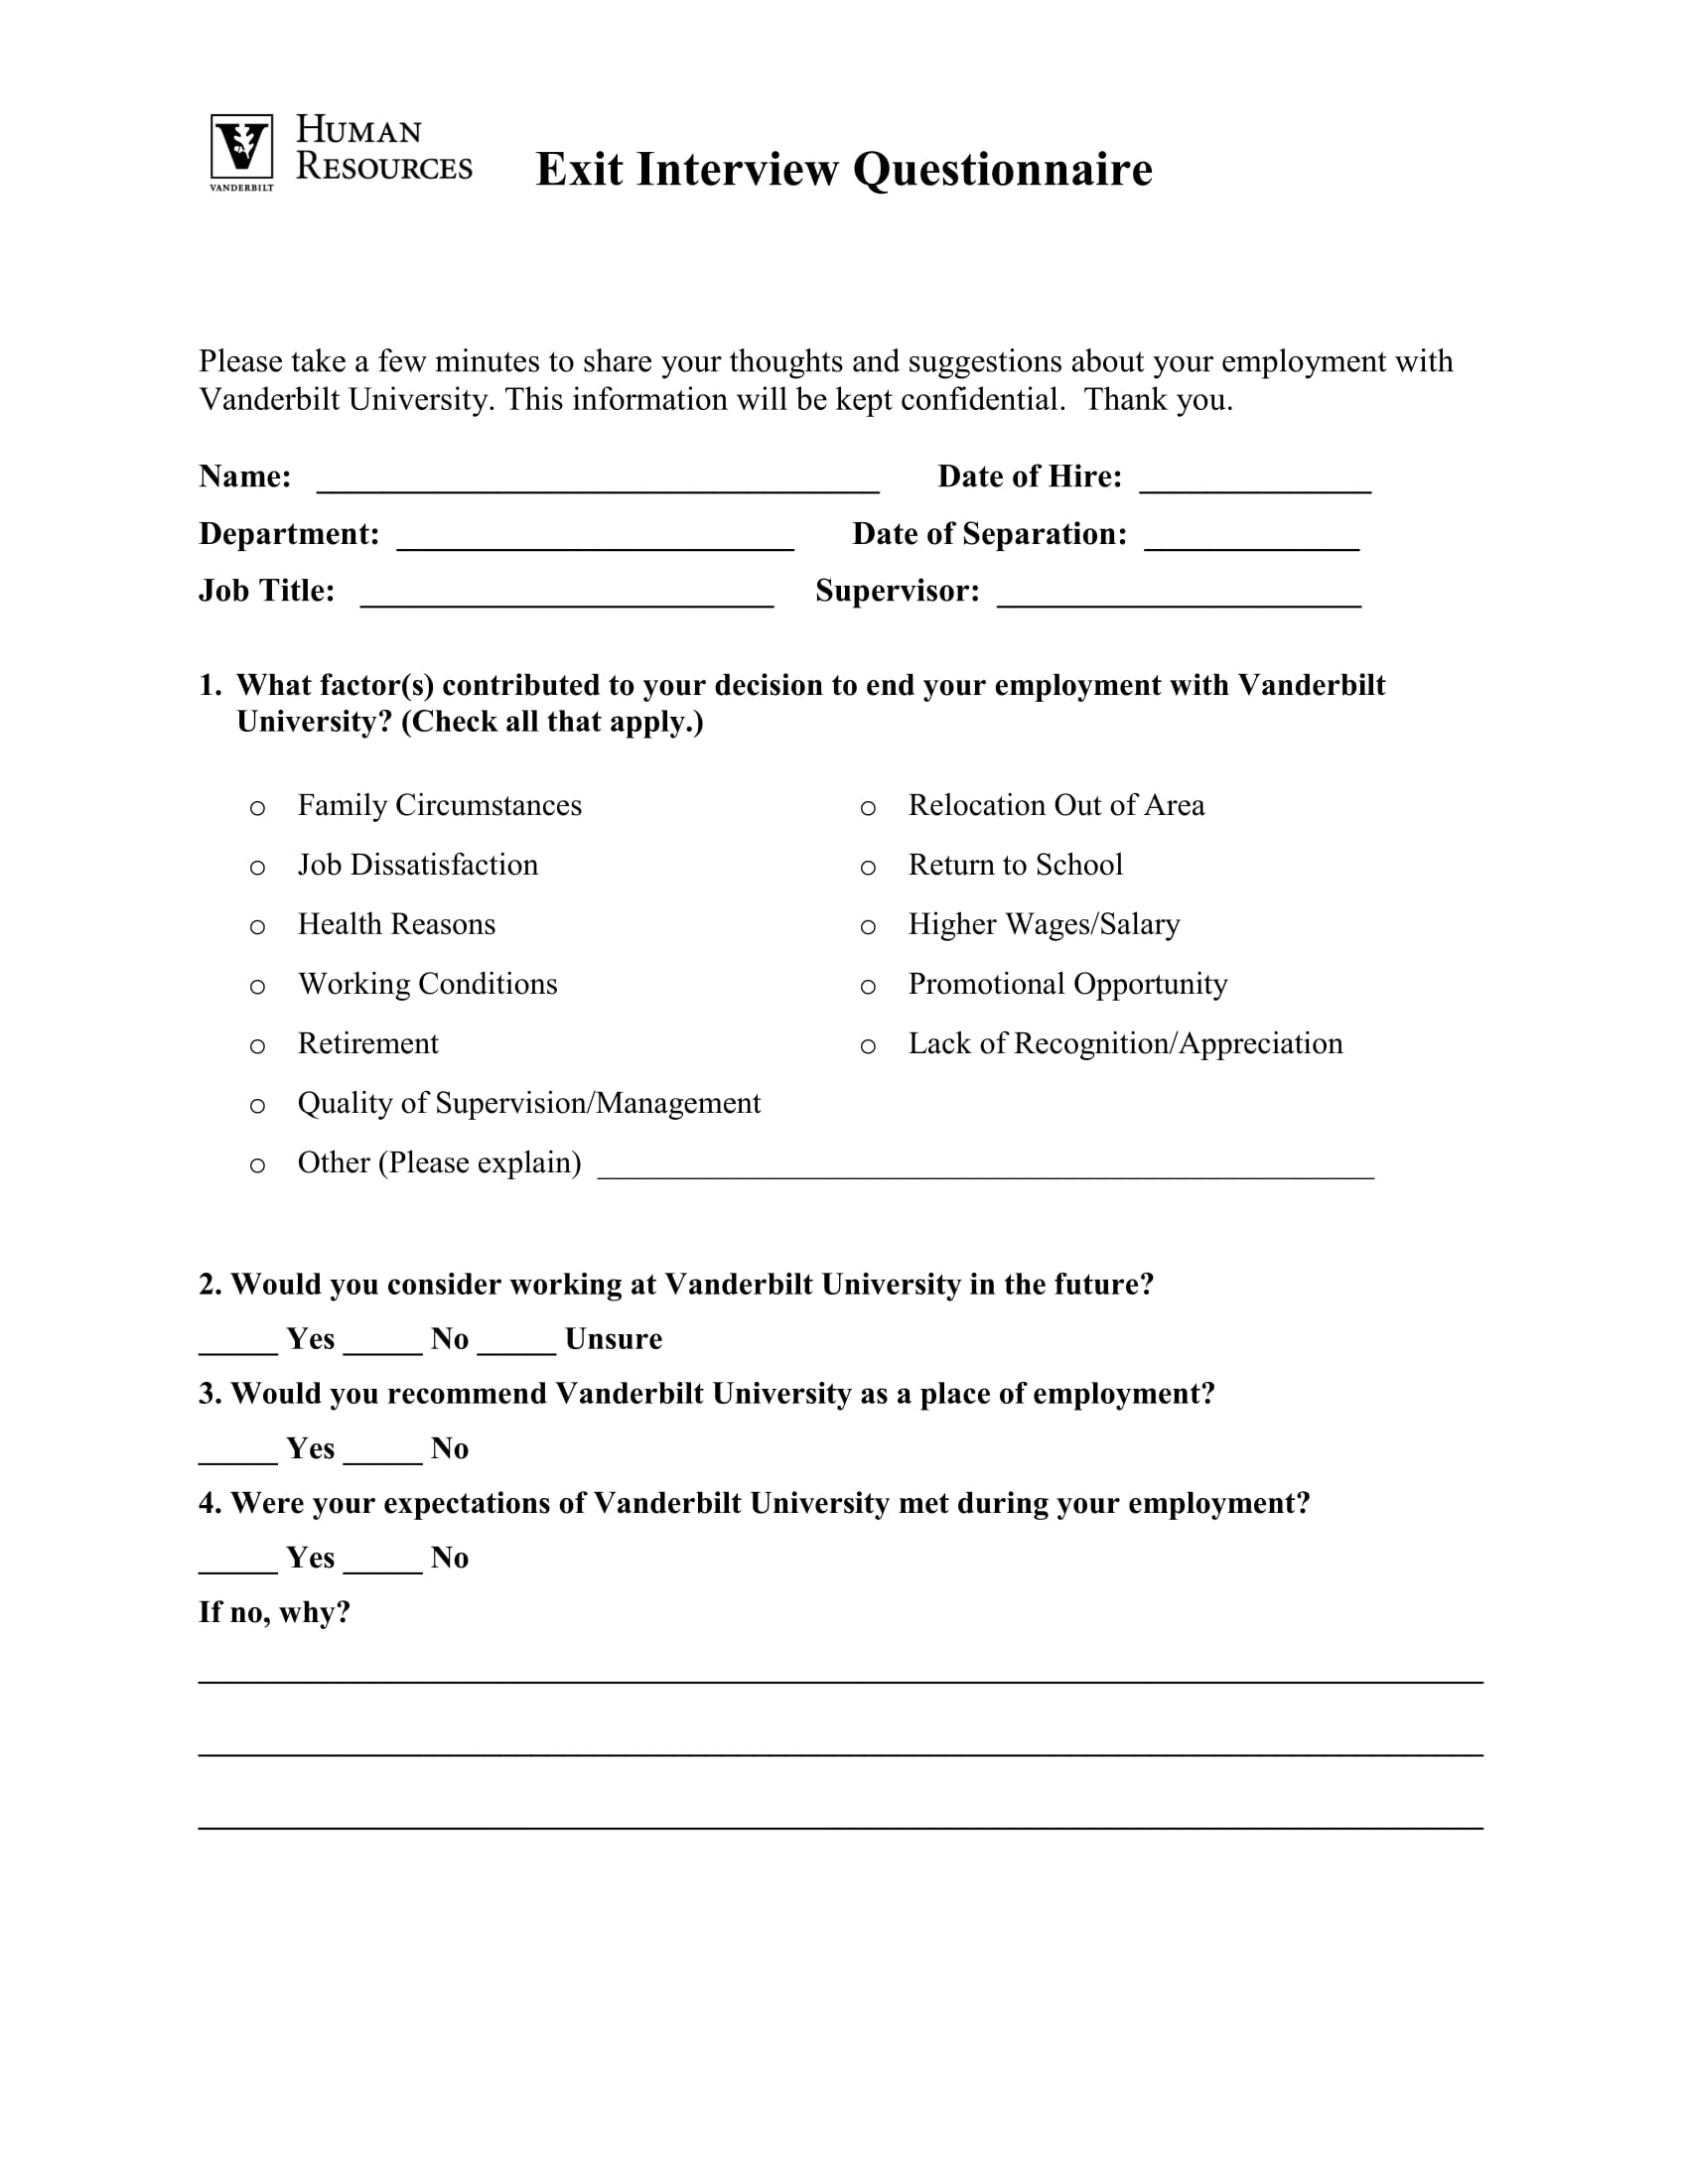 exit interview questionnaire form 1